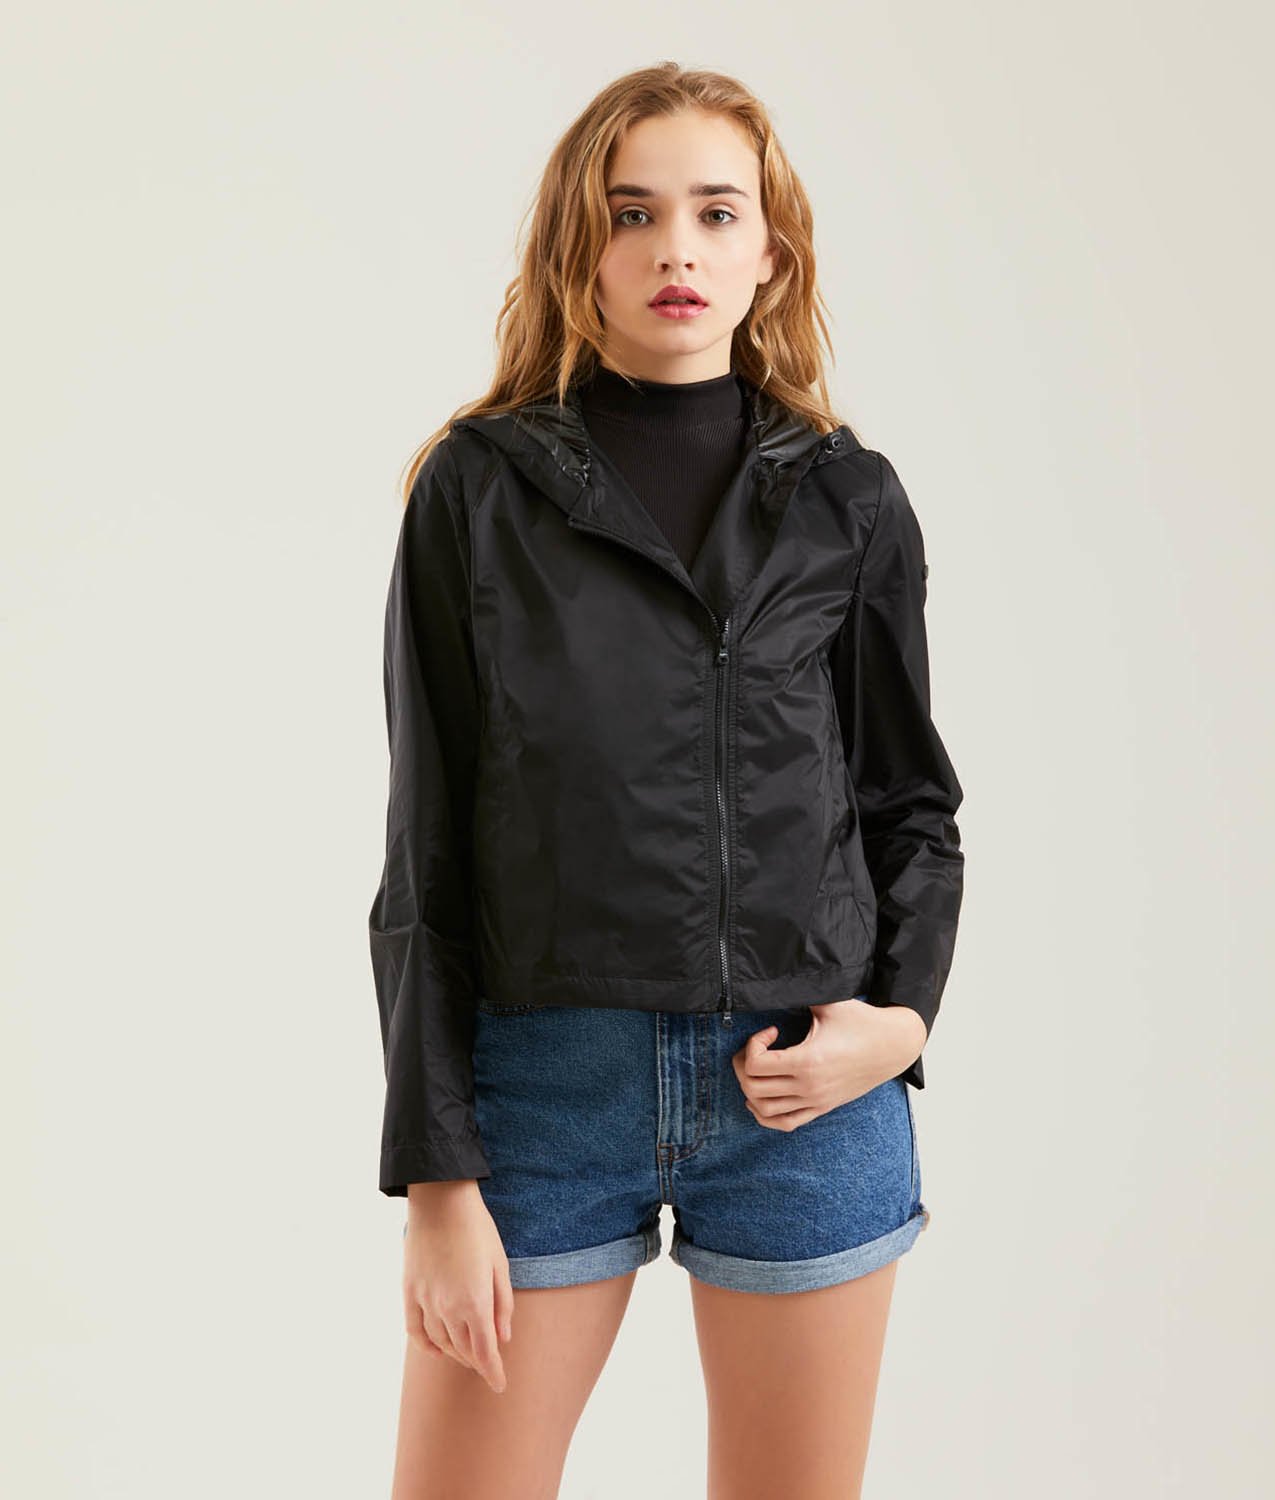 Jade Jacket - Light summer jackets - Refrigiwear